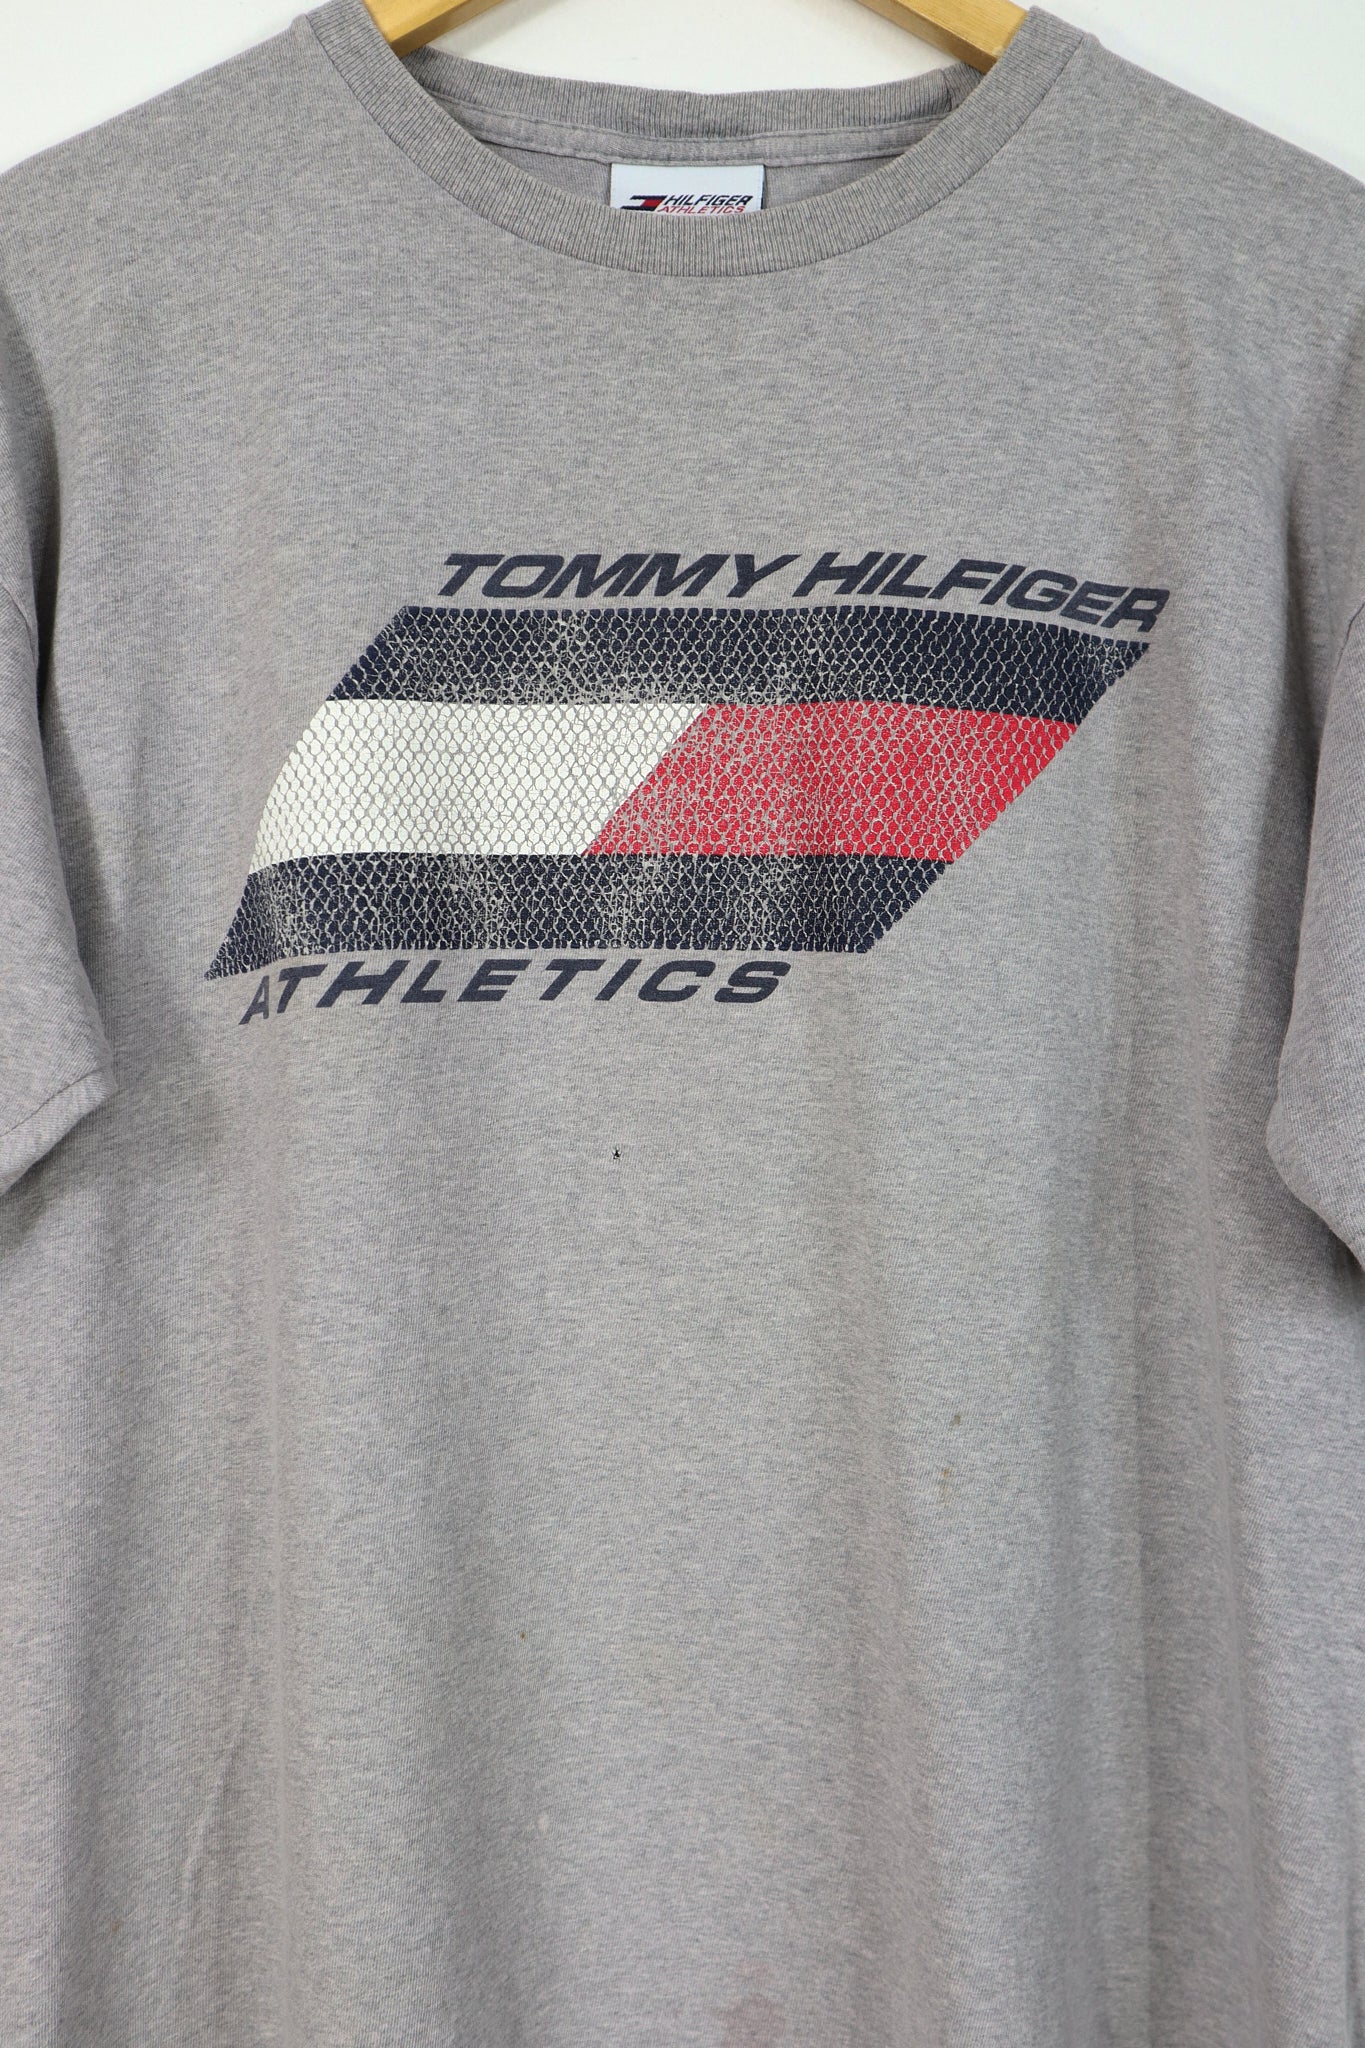 Vintage Tommy Hilfiger Athletics Tee